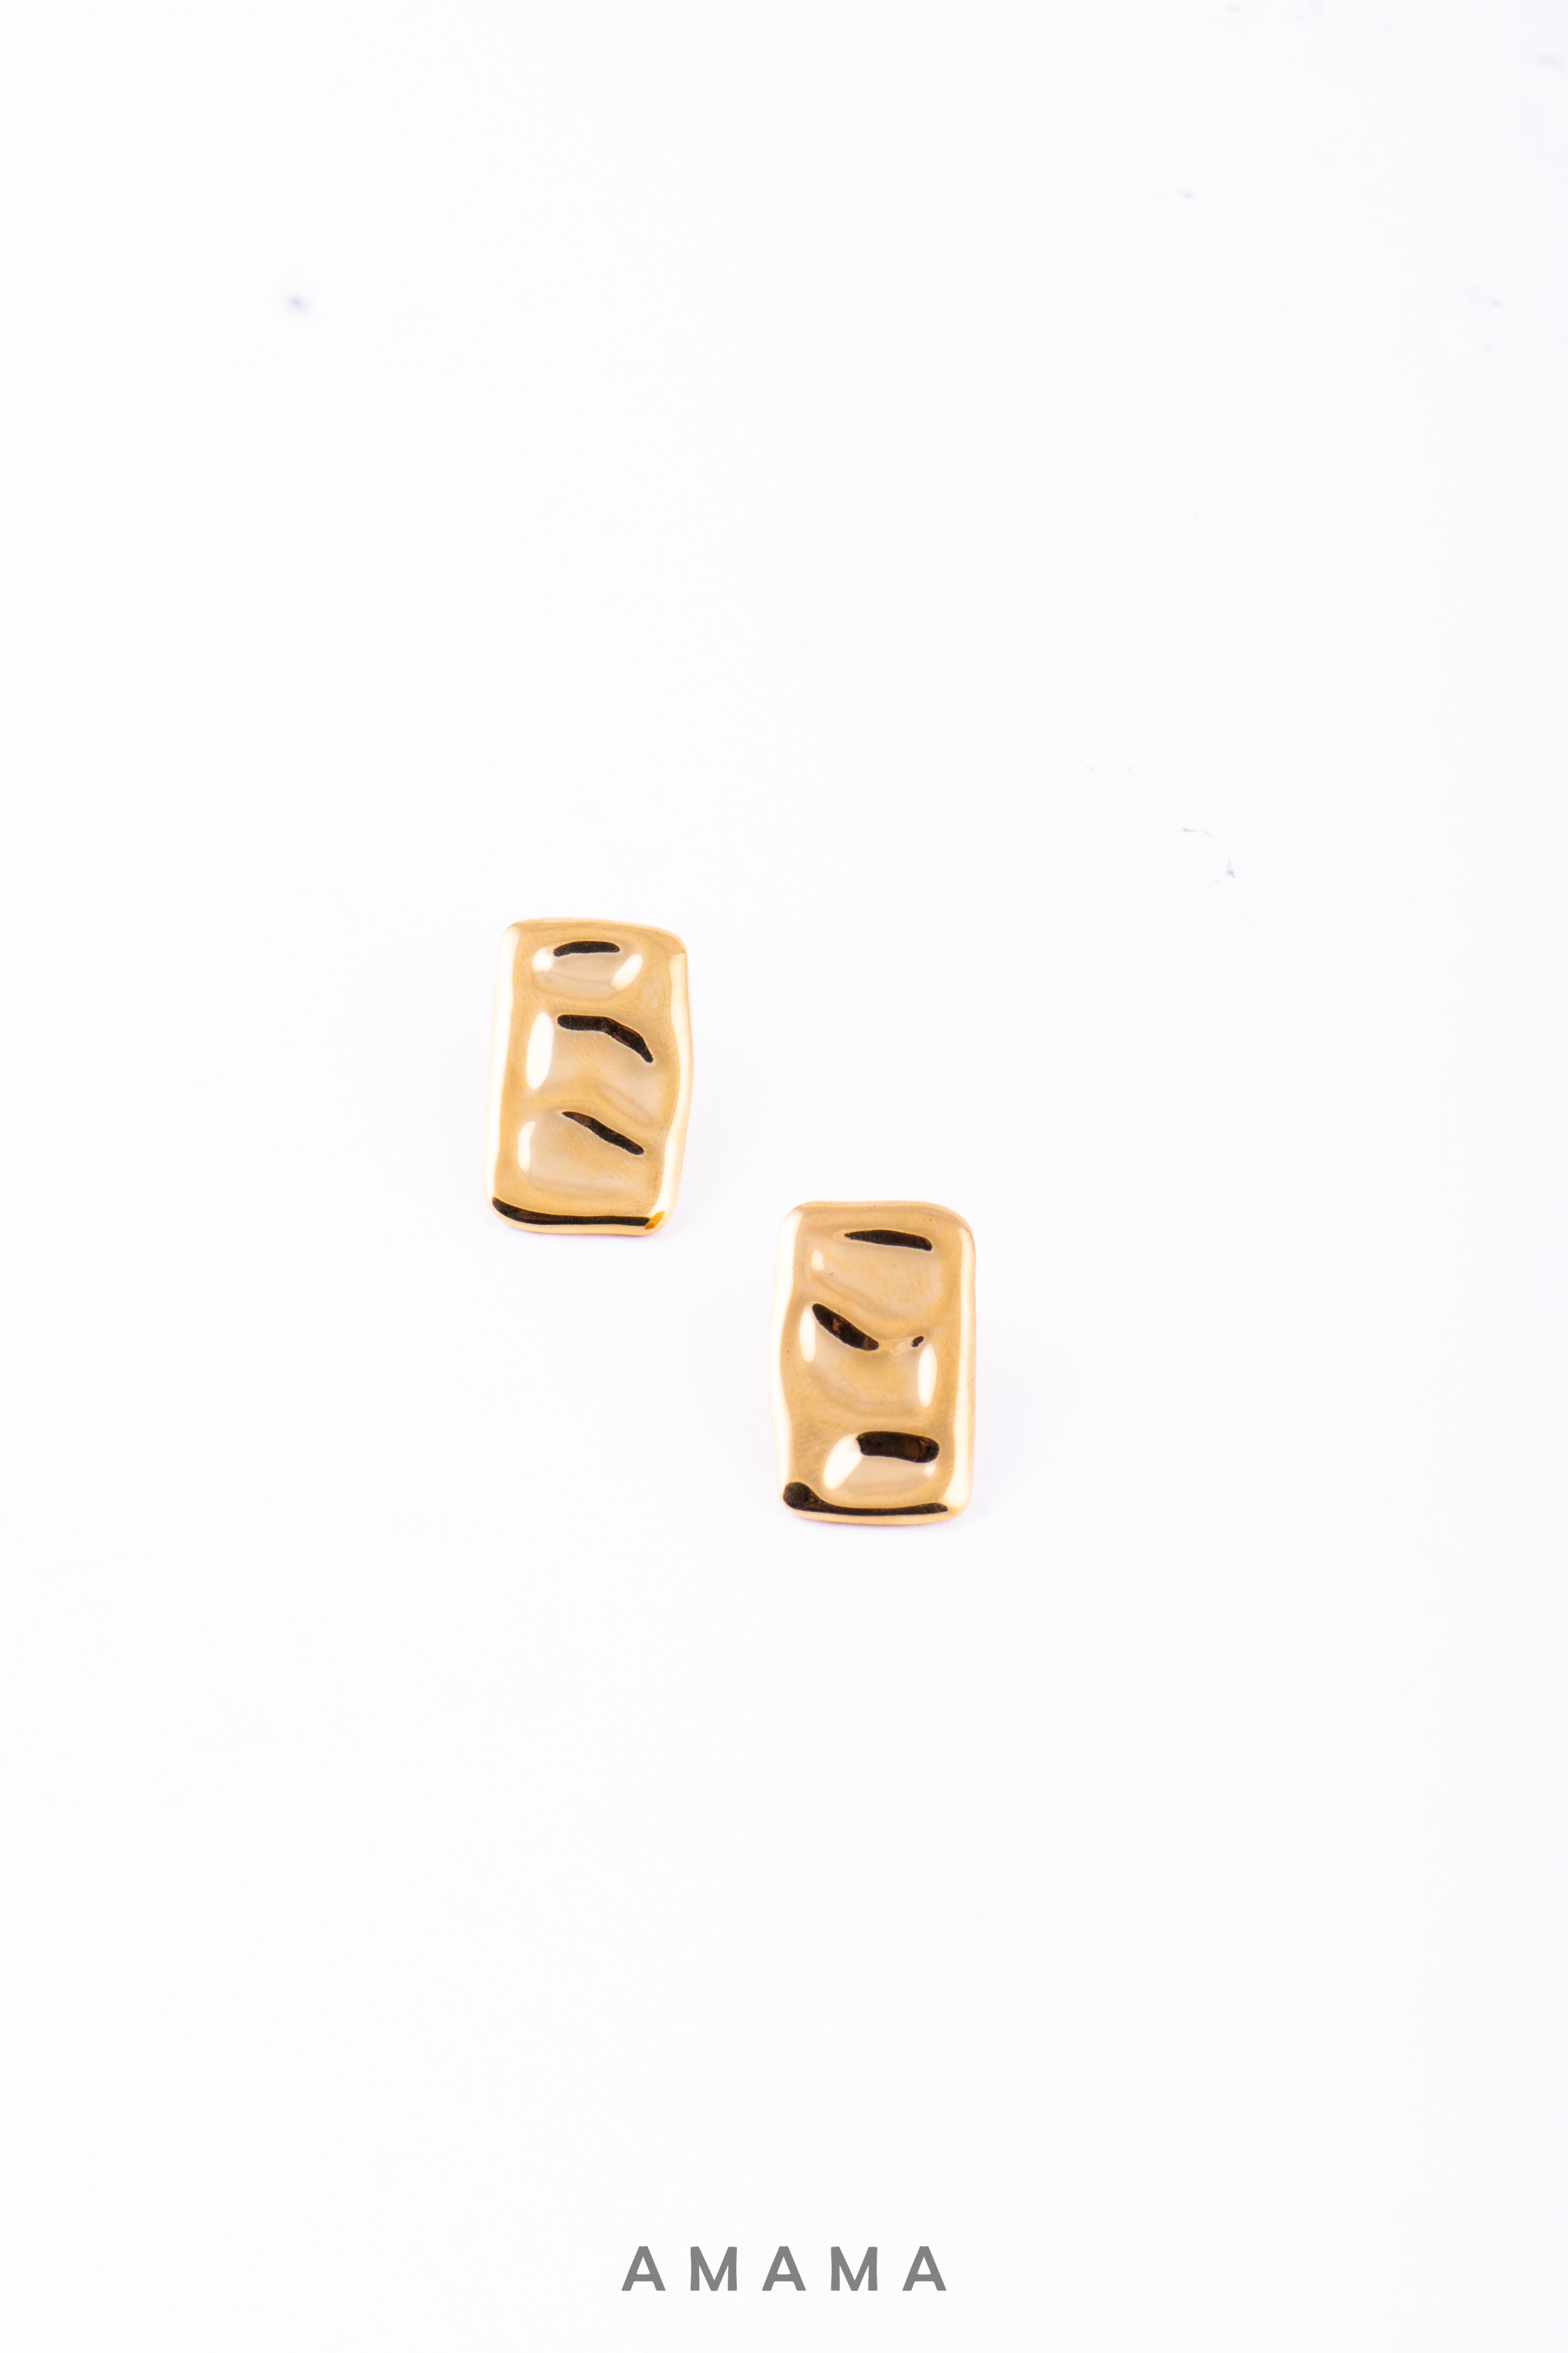 Amama,Rom Earrings in Gold